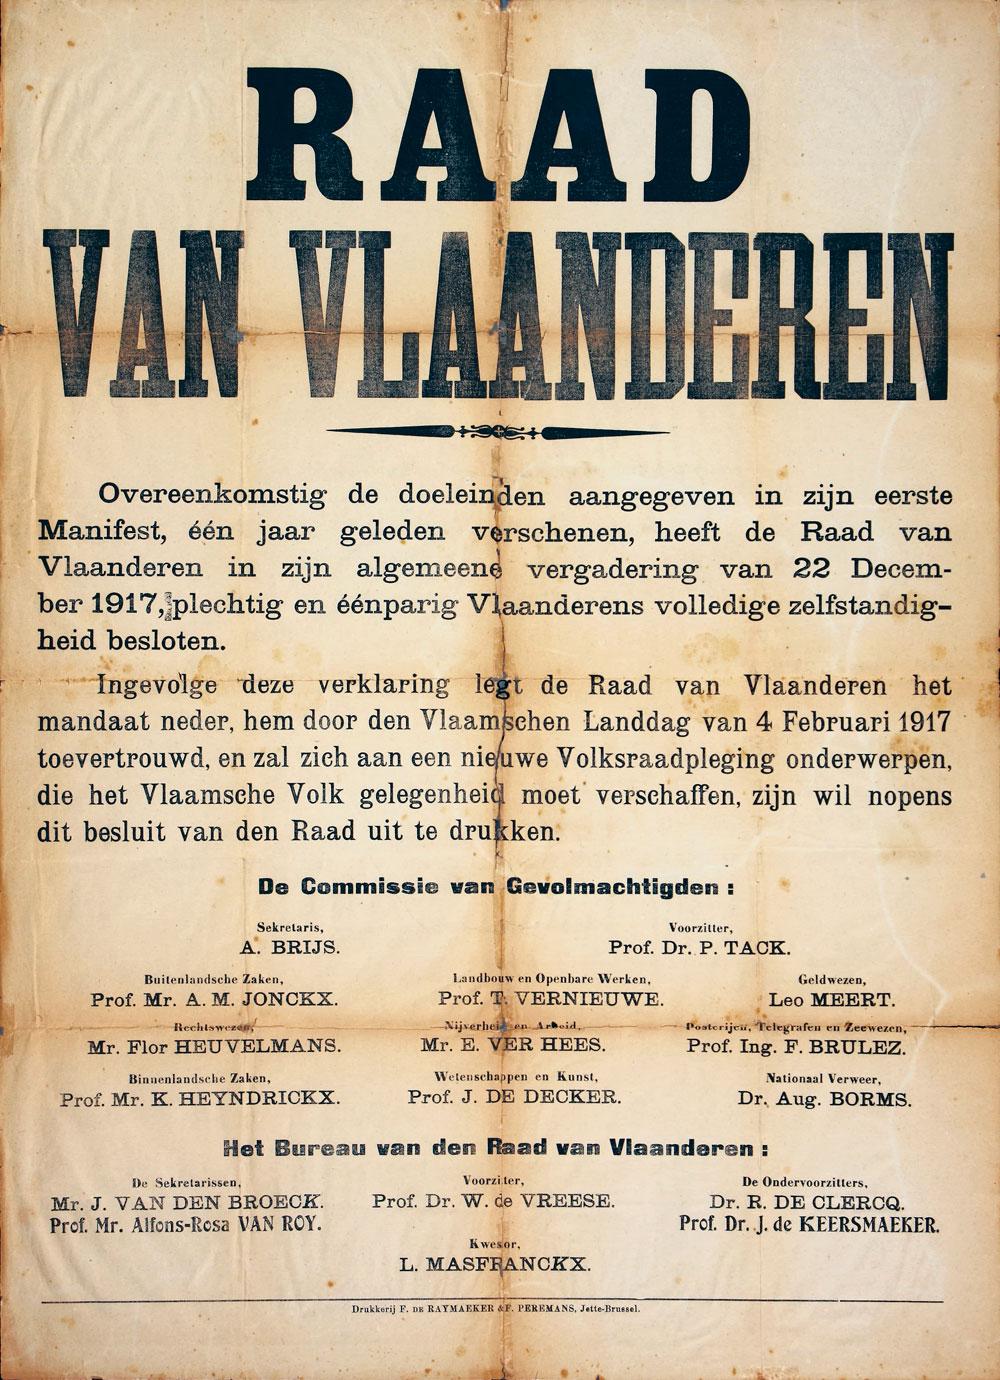 L'affiche annonçant la proclamation de l'indépendance flamande soumise à consultation populaire. Un fiasco.